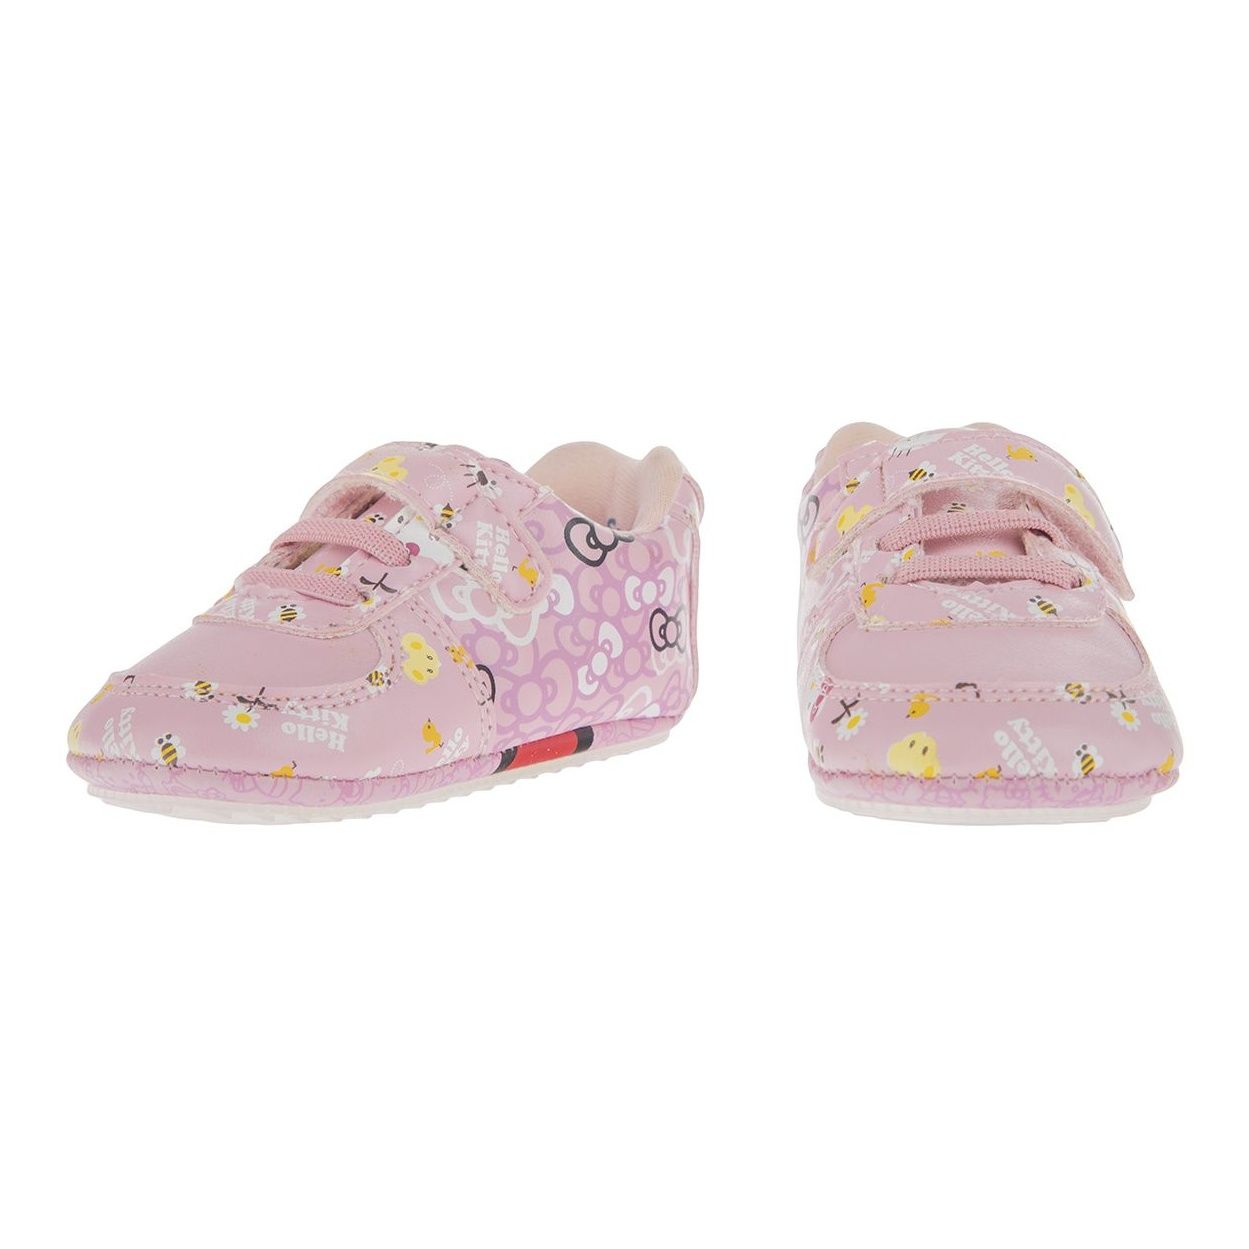 کفش نوزادی تادلر مدل Hello Kitty Babies -  - 5